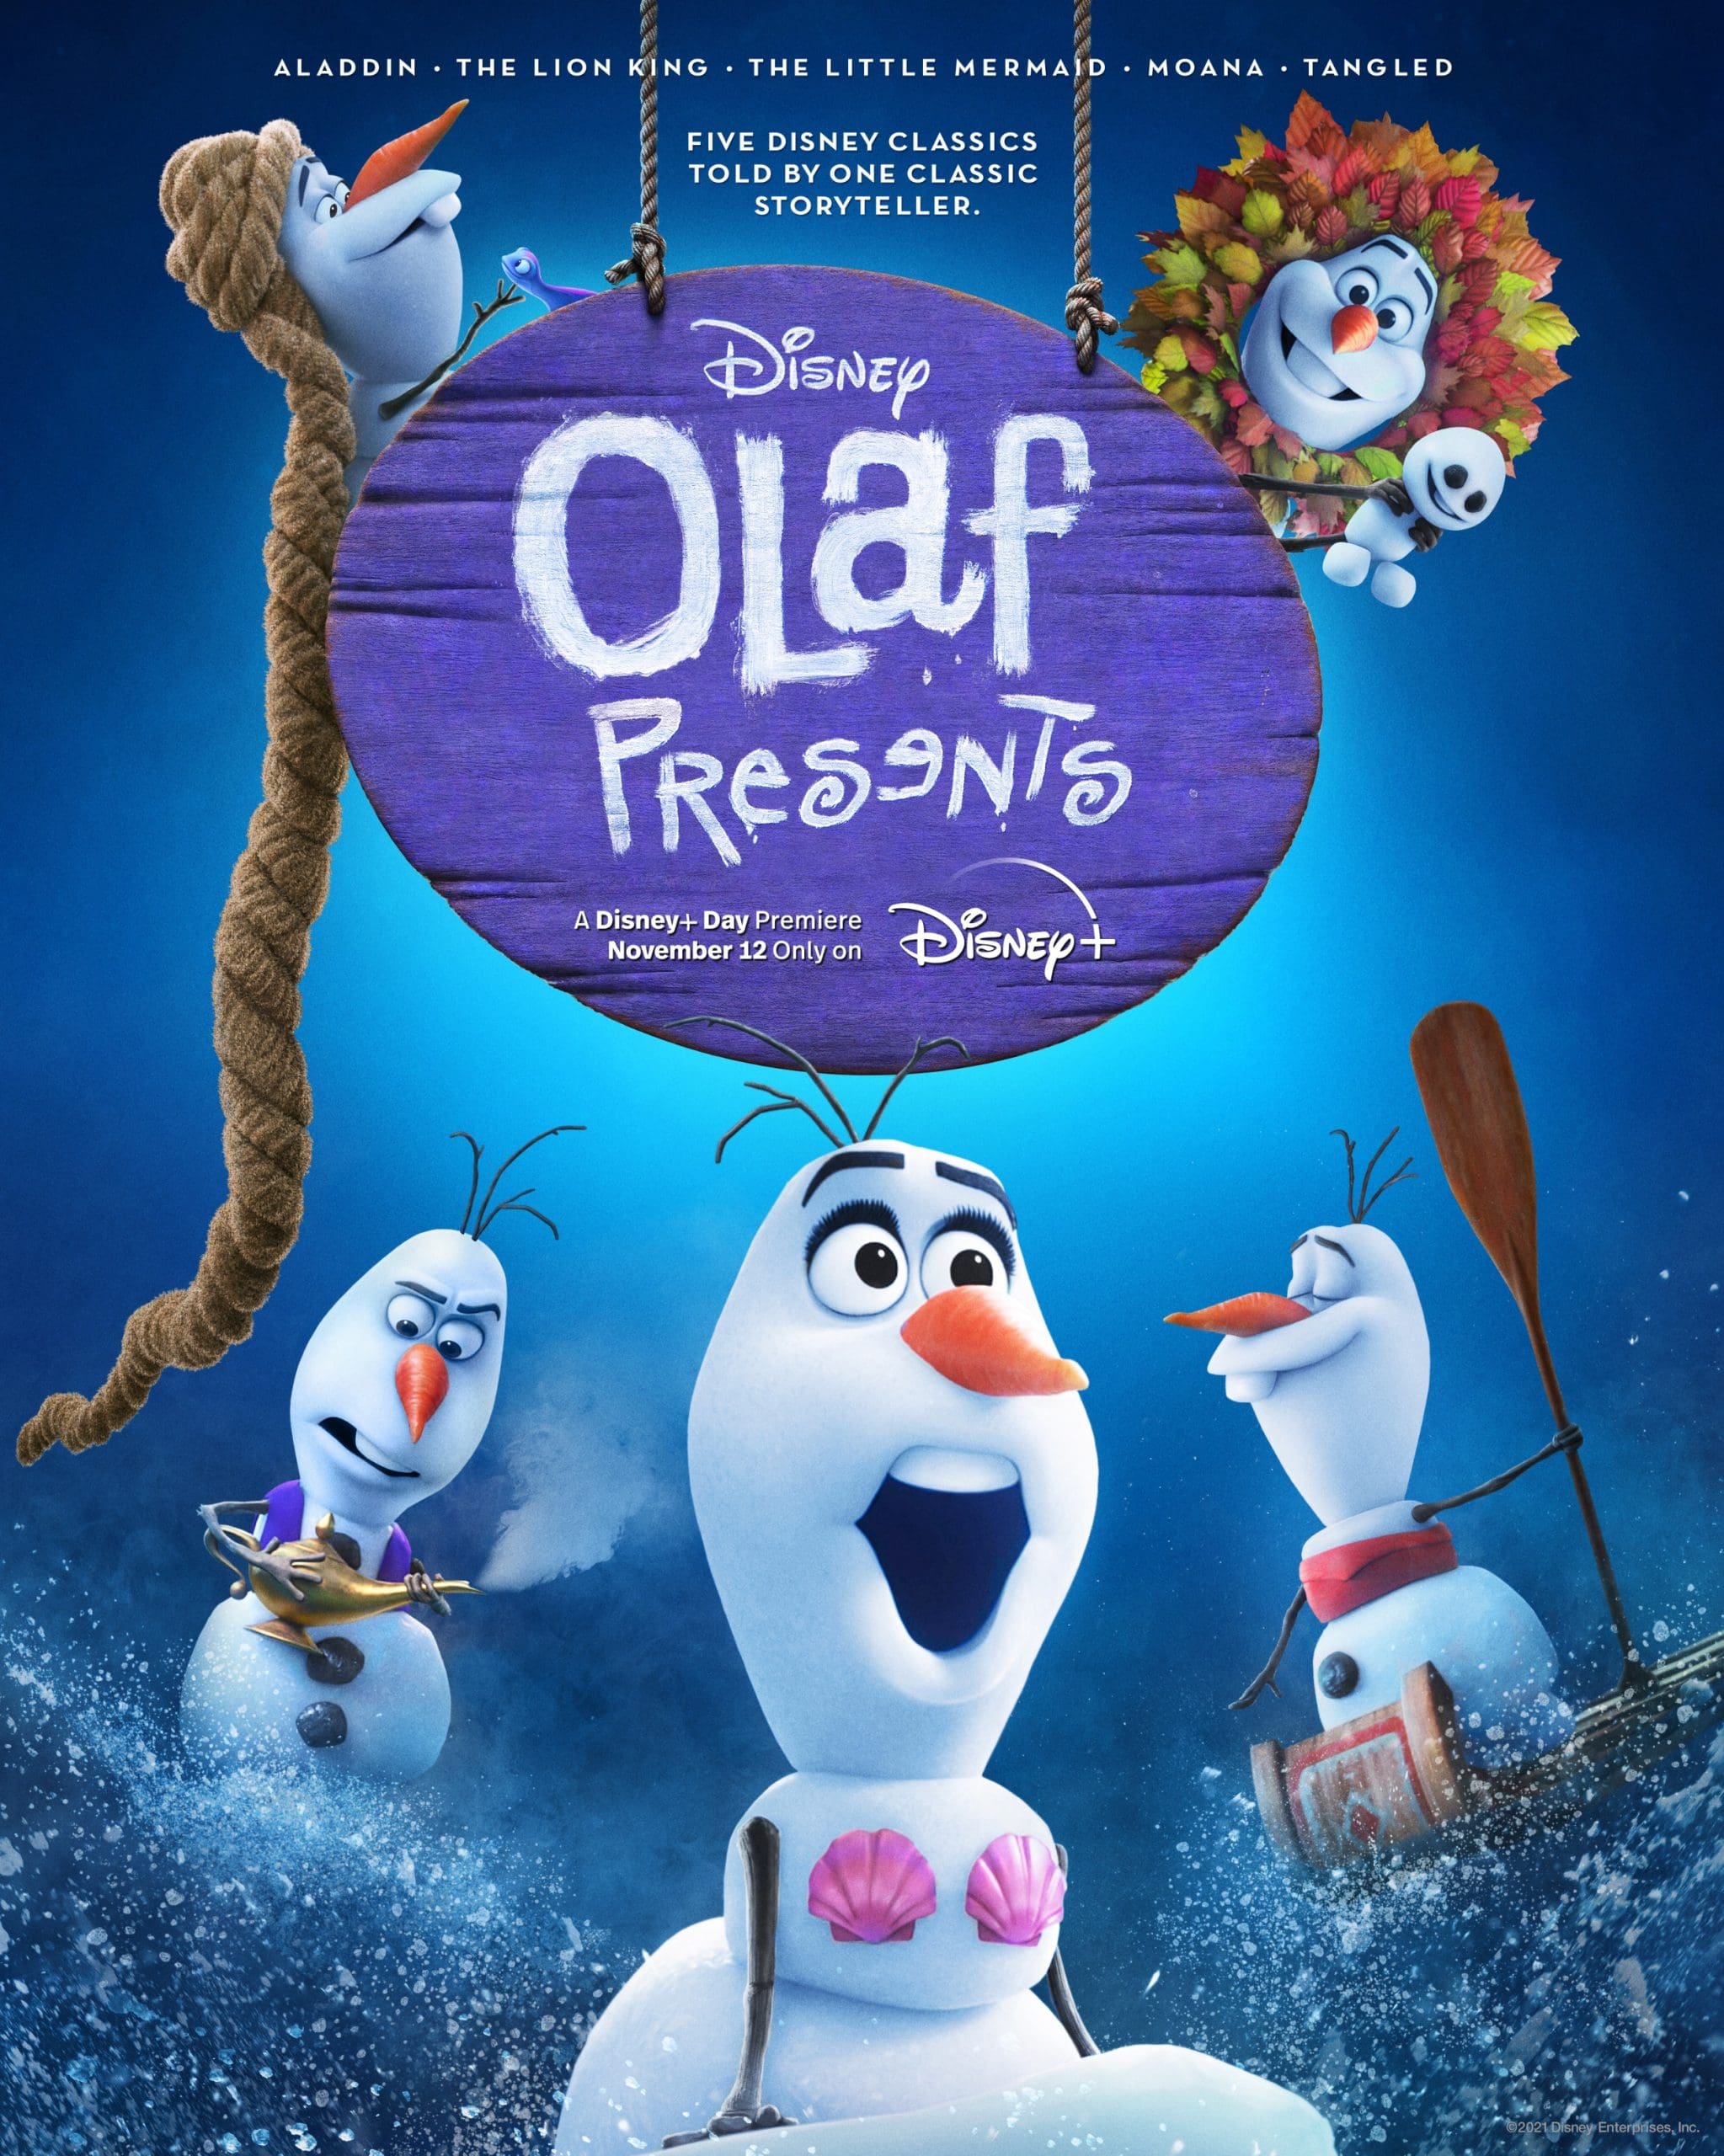 اولاف تقدیم می کند (Olaf Presents)